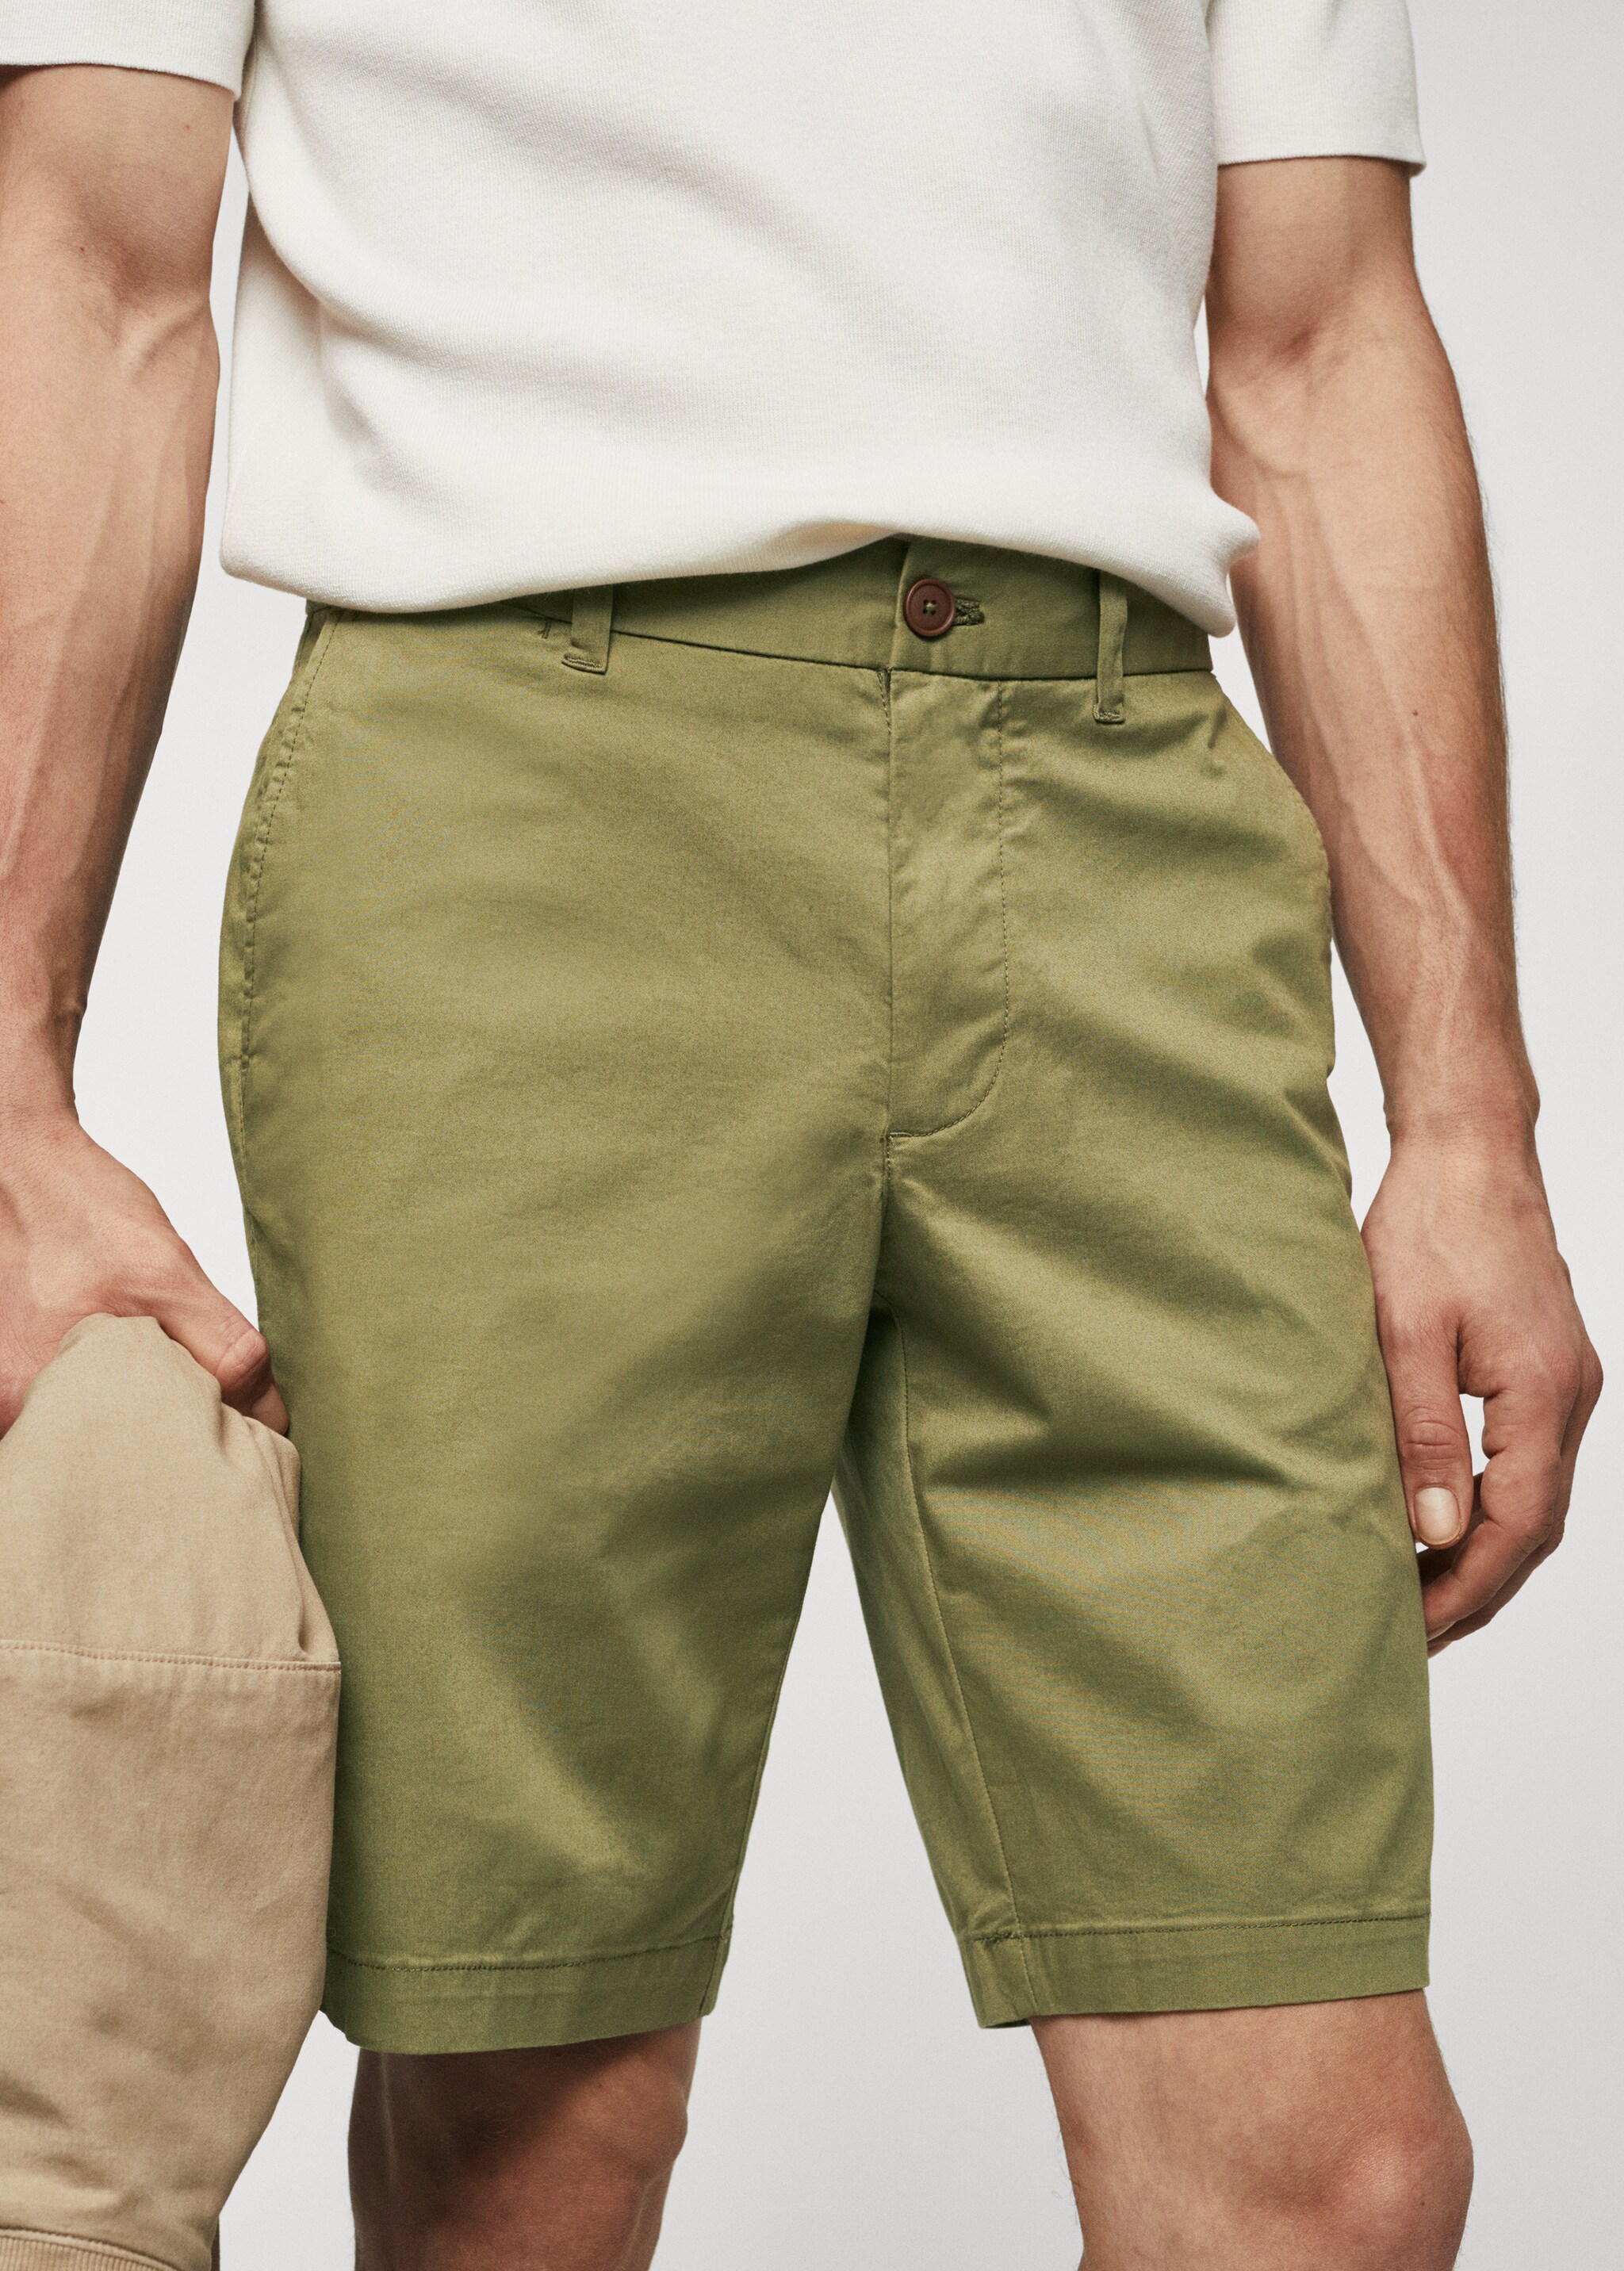 Slim fit chino cotton Bermuda shorts - Detaliu al articolului 1